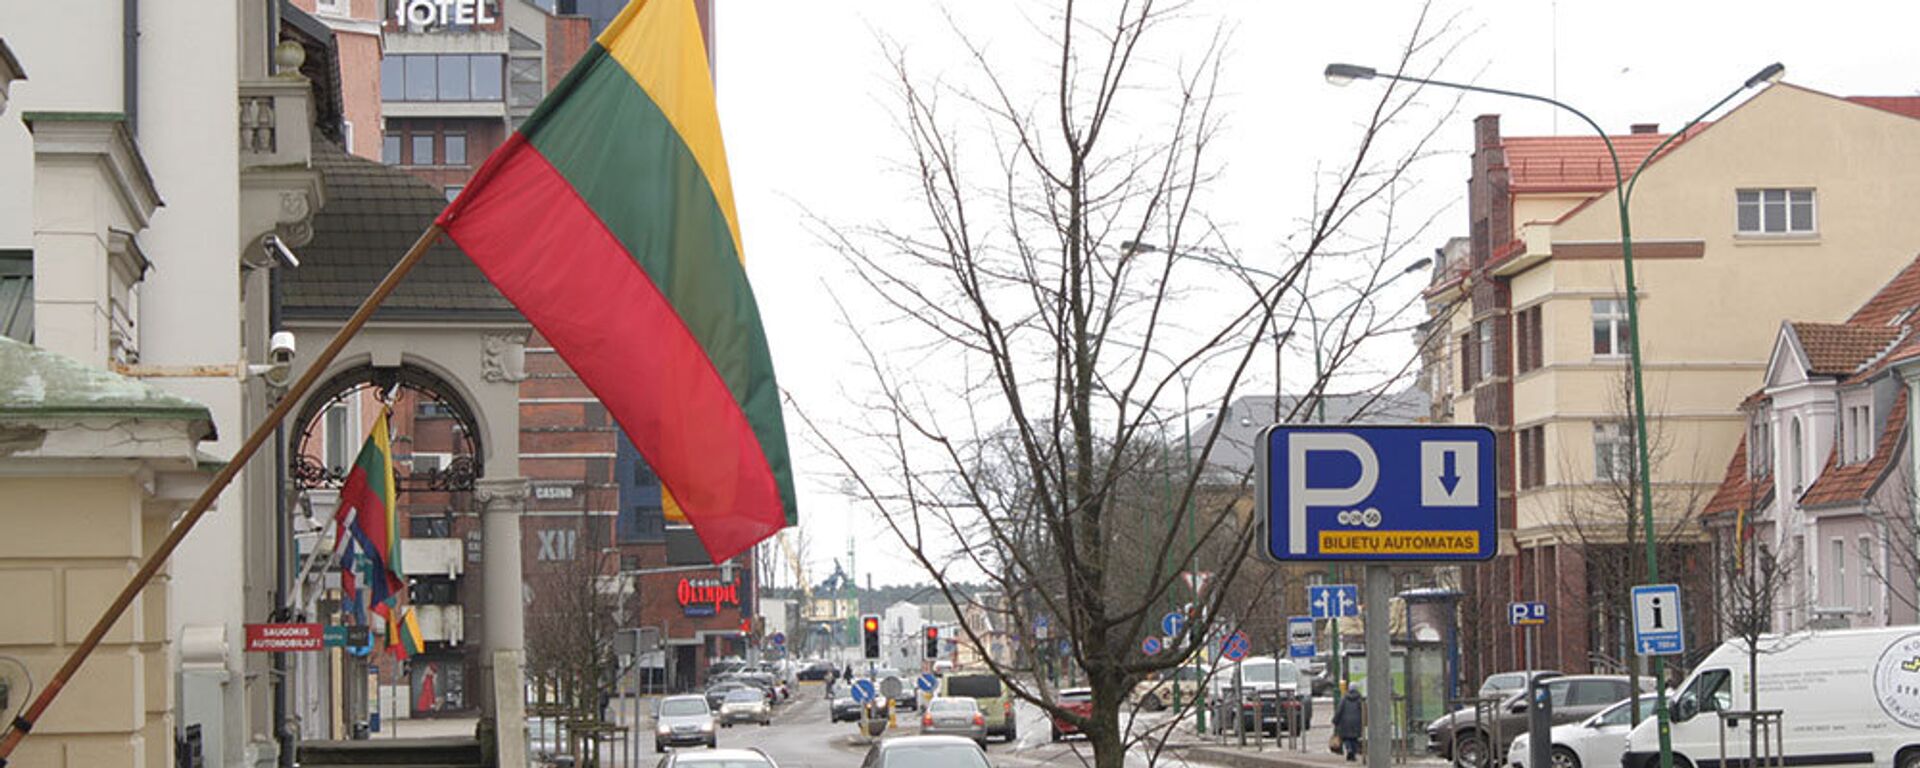 Государственные флаги Литвы украшают дома на улице Лепу в Клайпеде - Sputnik Lietuva, 1920, 04.03.2020